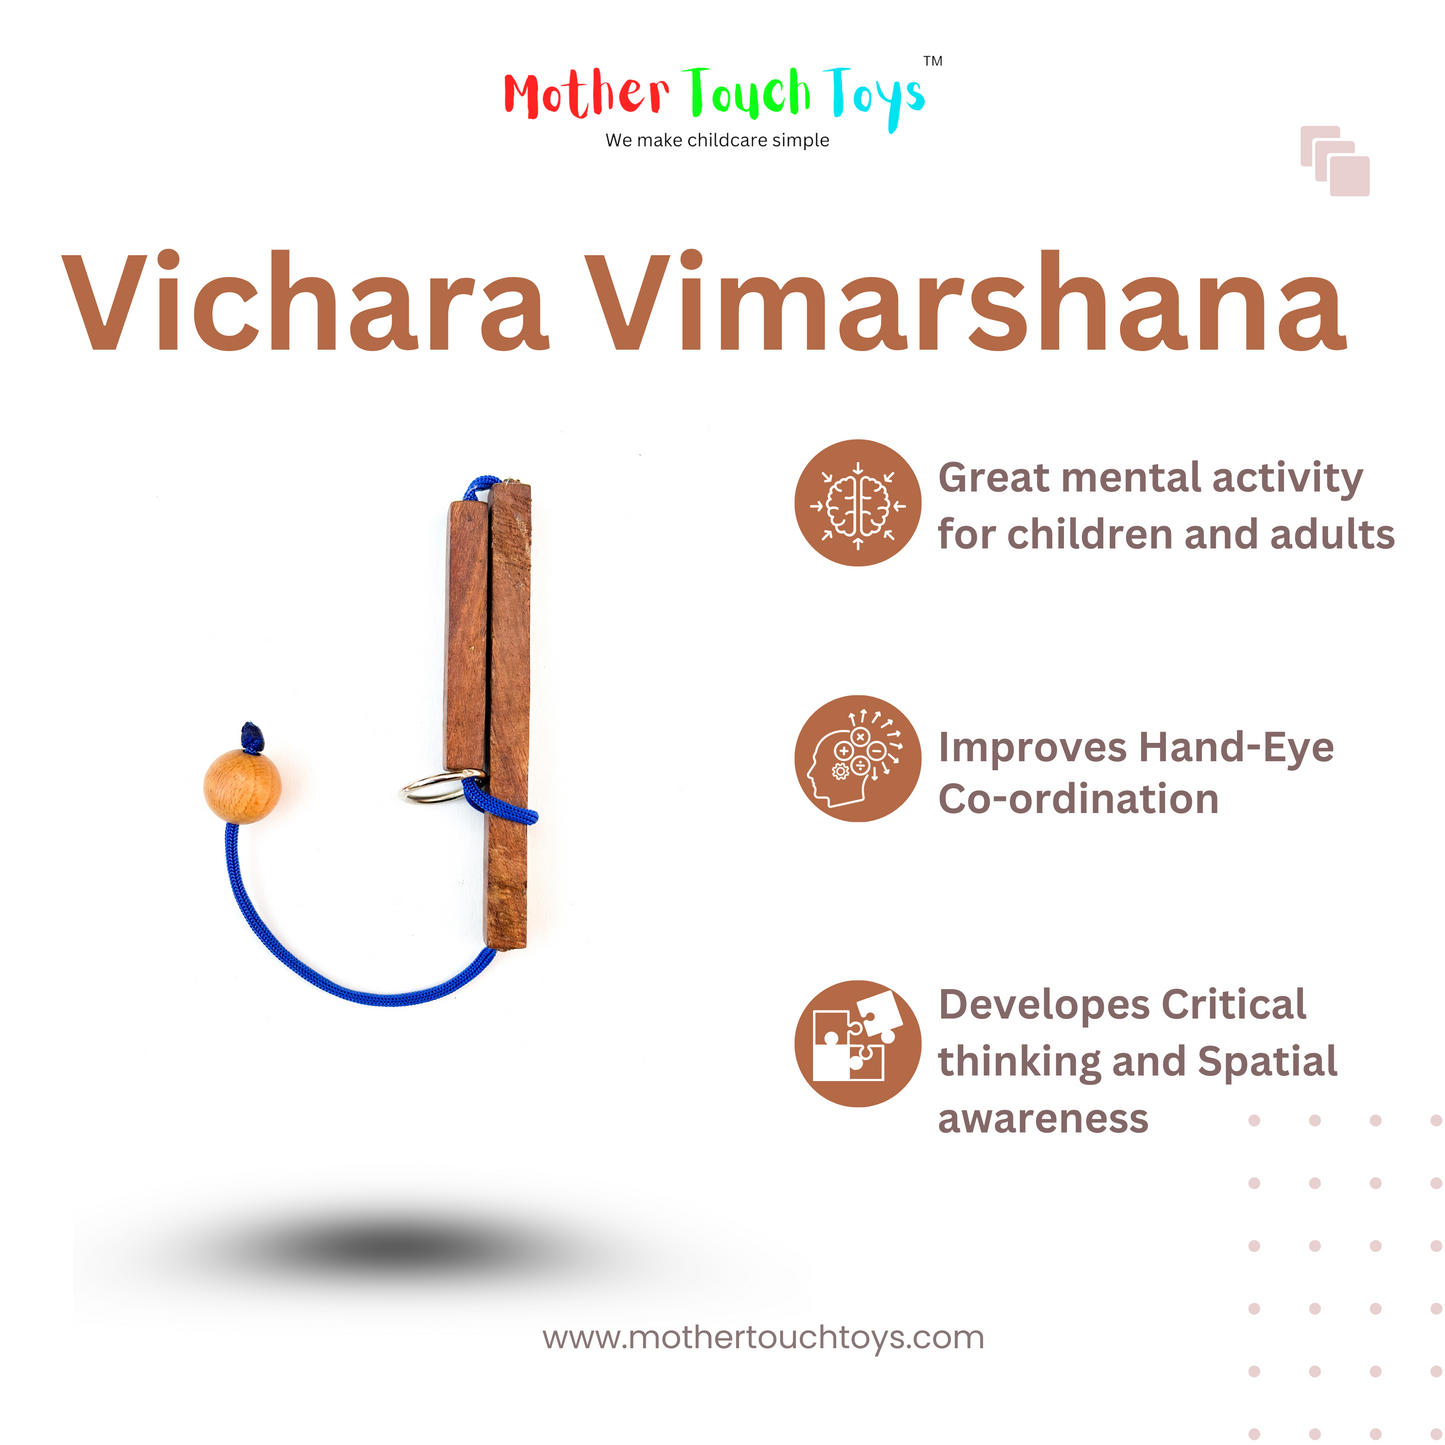 Vichara Vimarshana